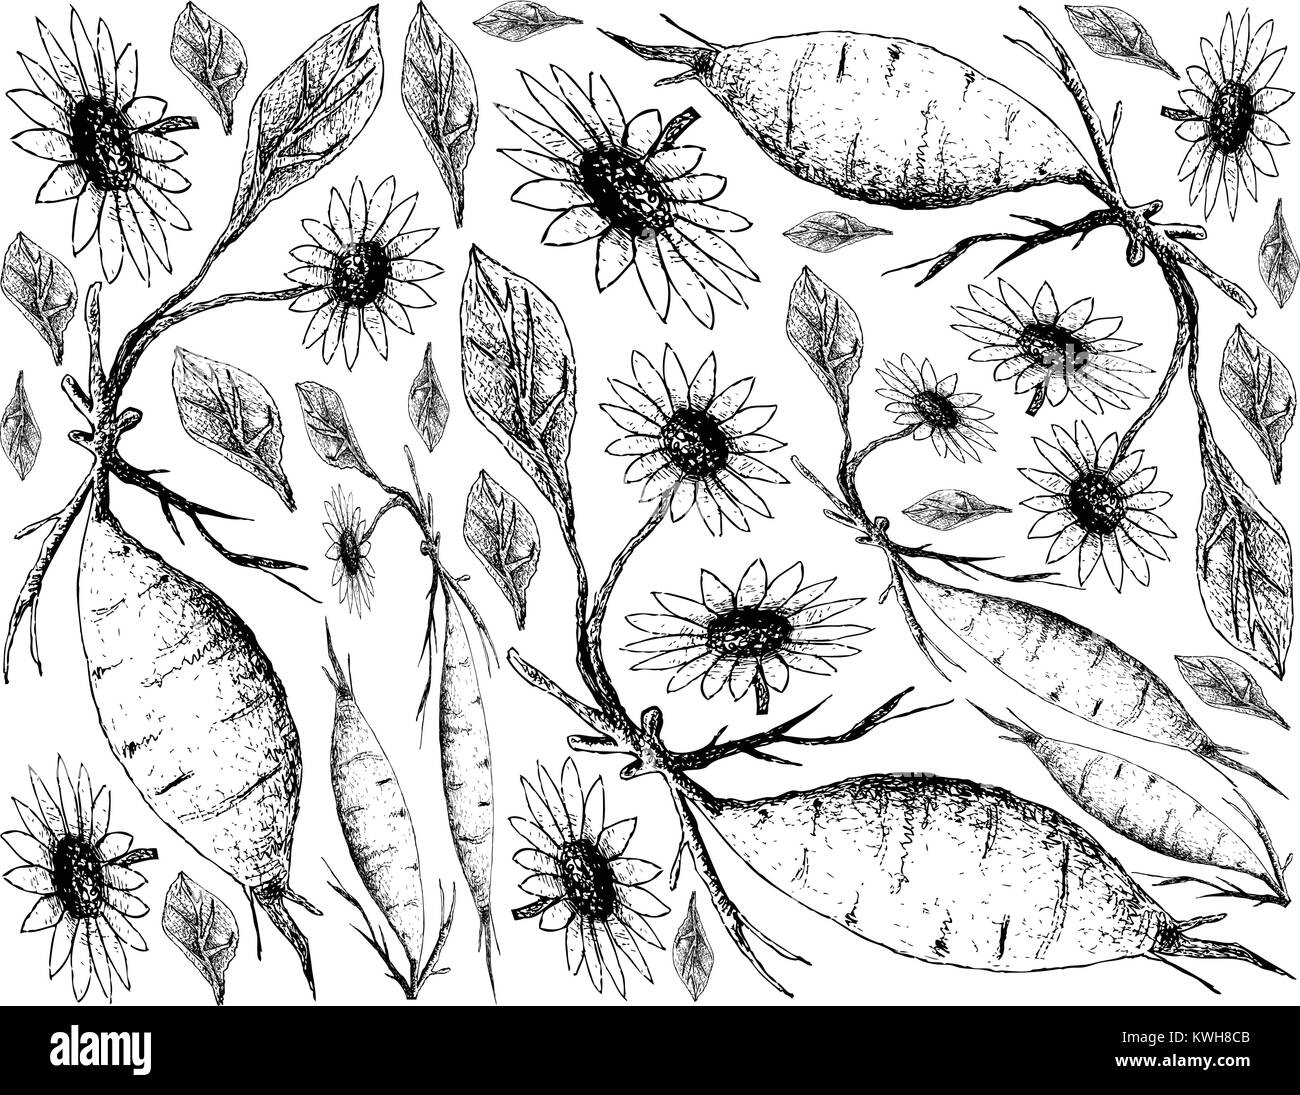 Root und knötchenförmige Gemüse, Illustration Hand gezeichnete Skizze von frischem Yacon oder Smallanthus Sonchifolius Pflanze isoliert auf weißem Hintergrund. Stock Vektor